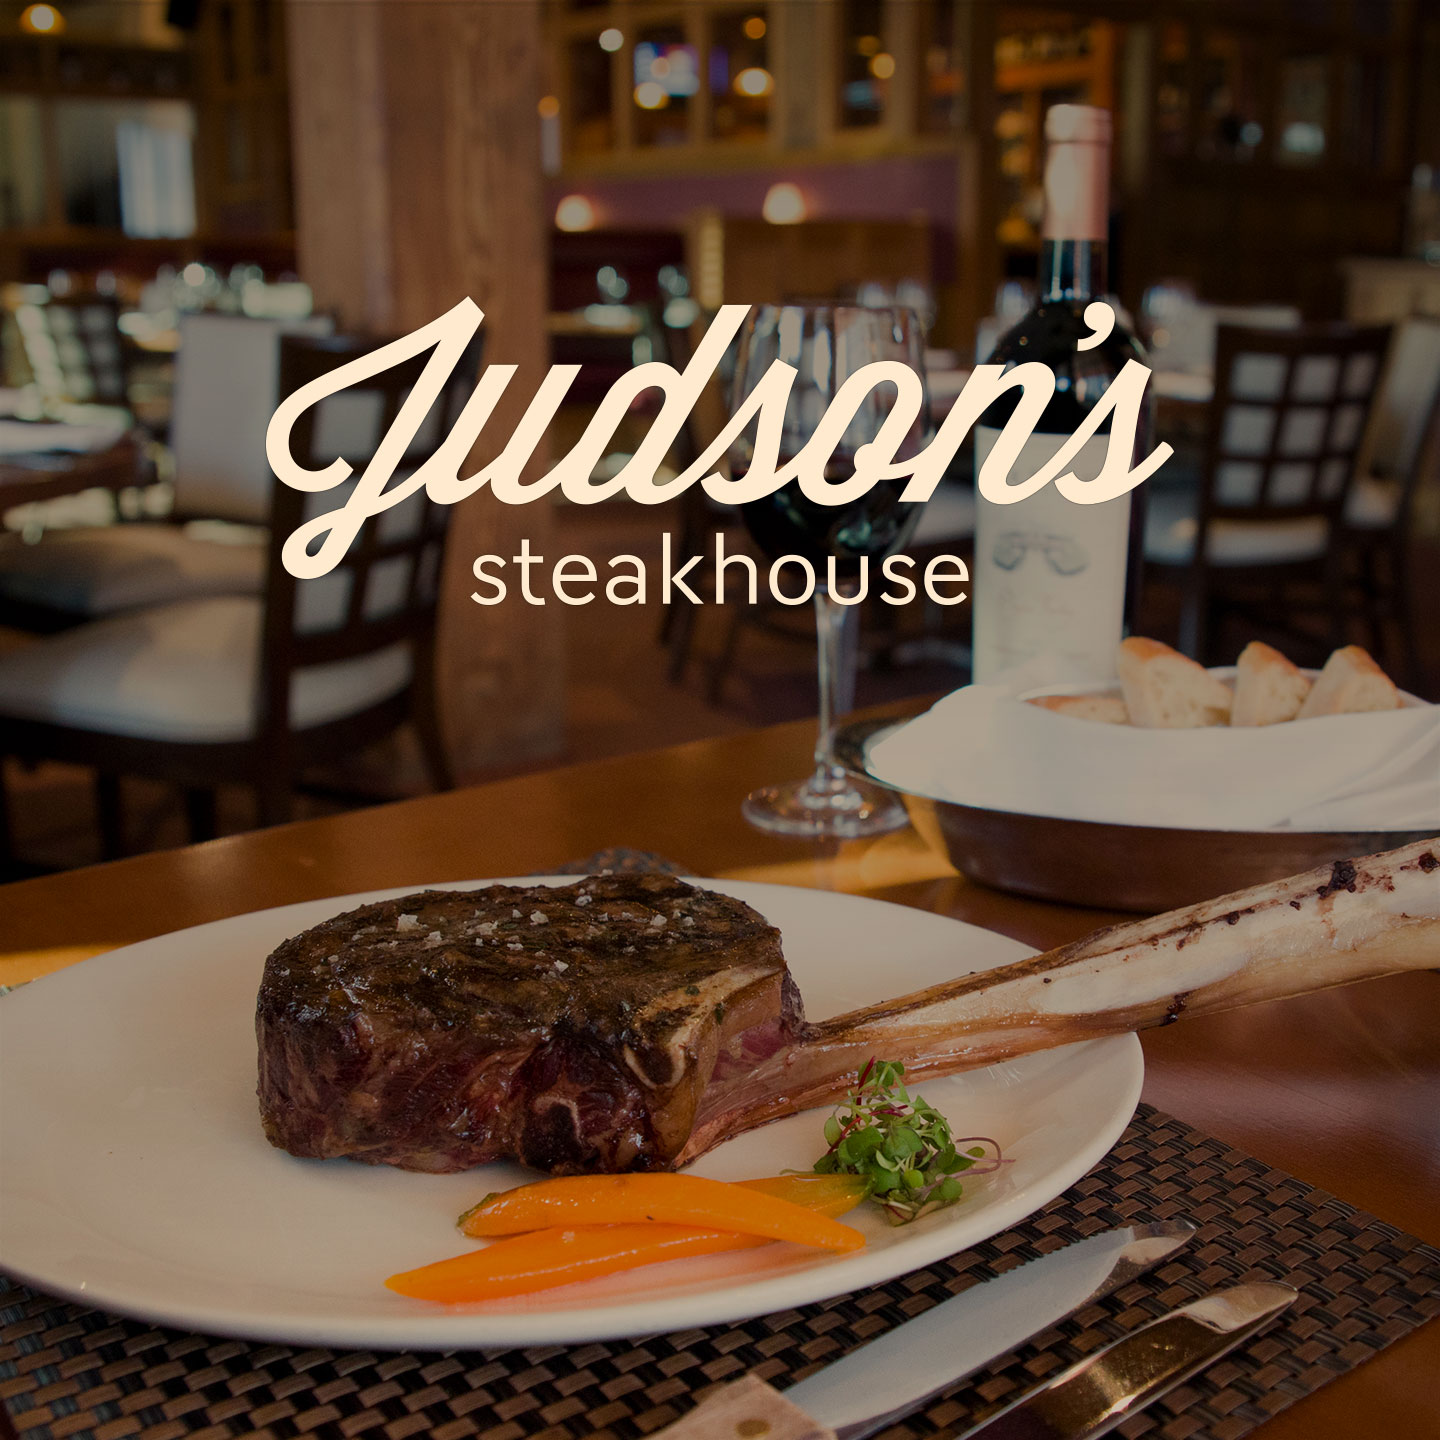 Judson's Restaurant